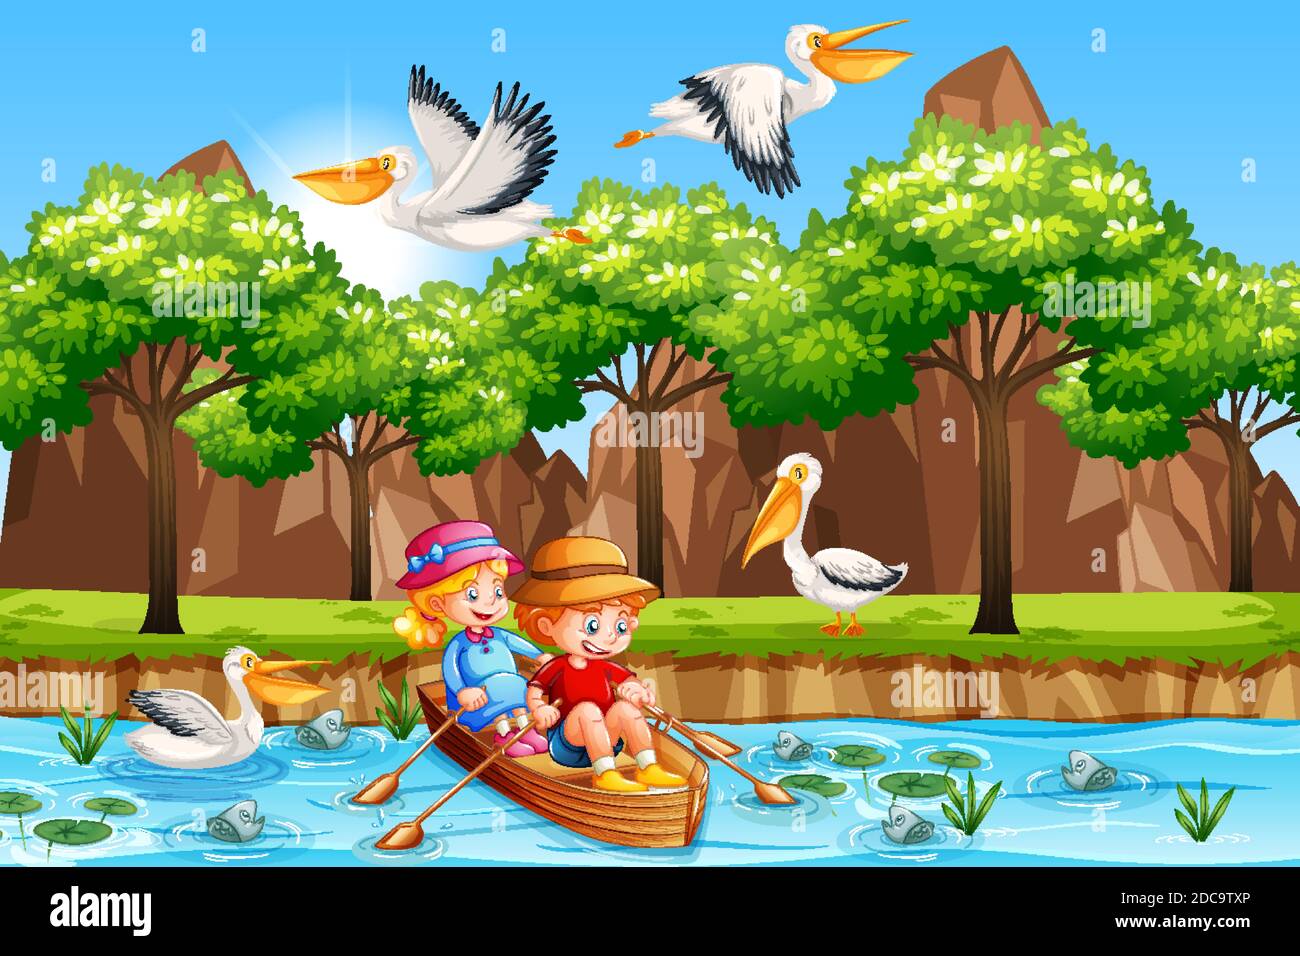 Les enfants sont à la rangée du bateau dans l'illustration de la scène de forêt fluviale Illustration de Vecteur